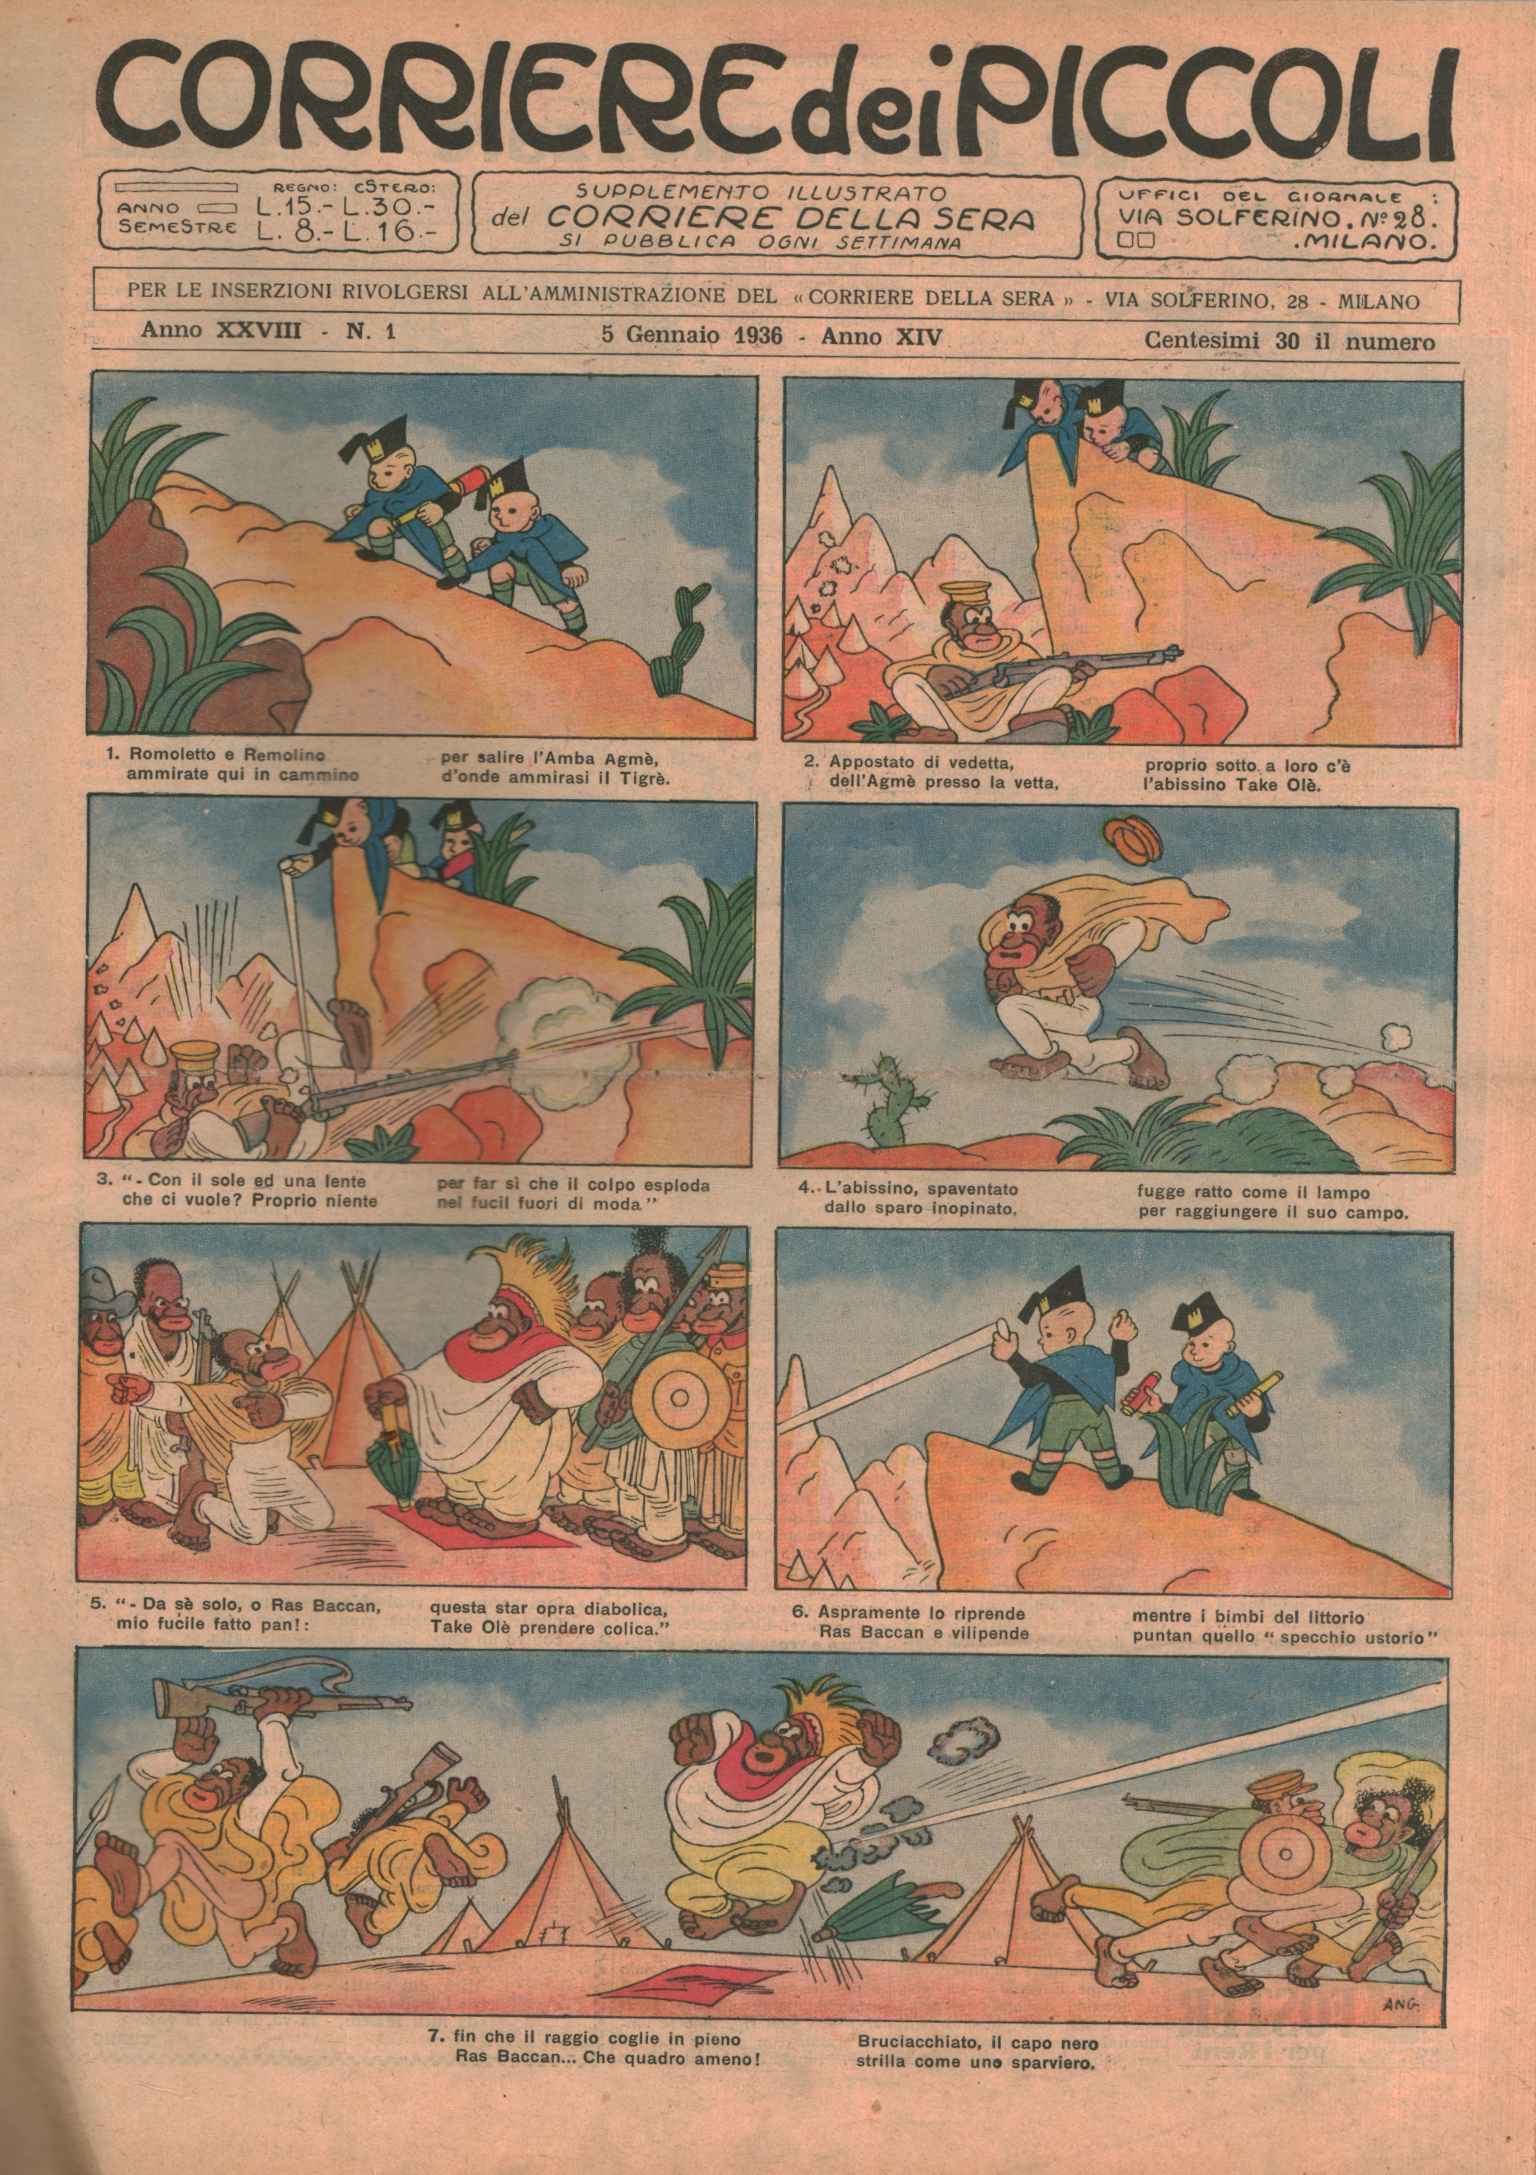 Corriere dei piccoli 1936 (52 numeri -,Corriere dei piccoli 1936. Annata comple